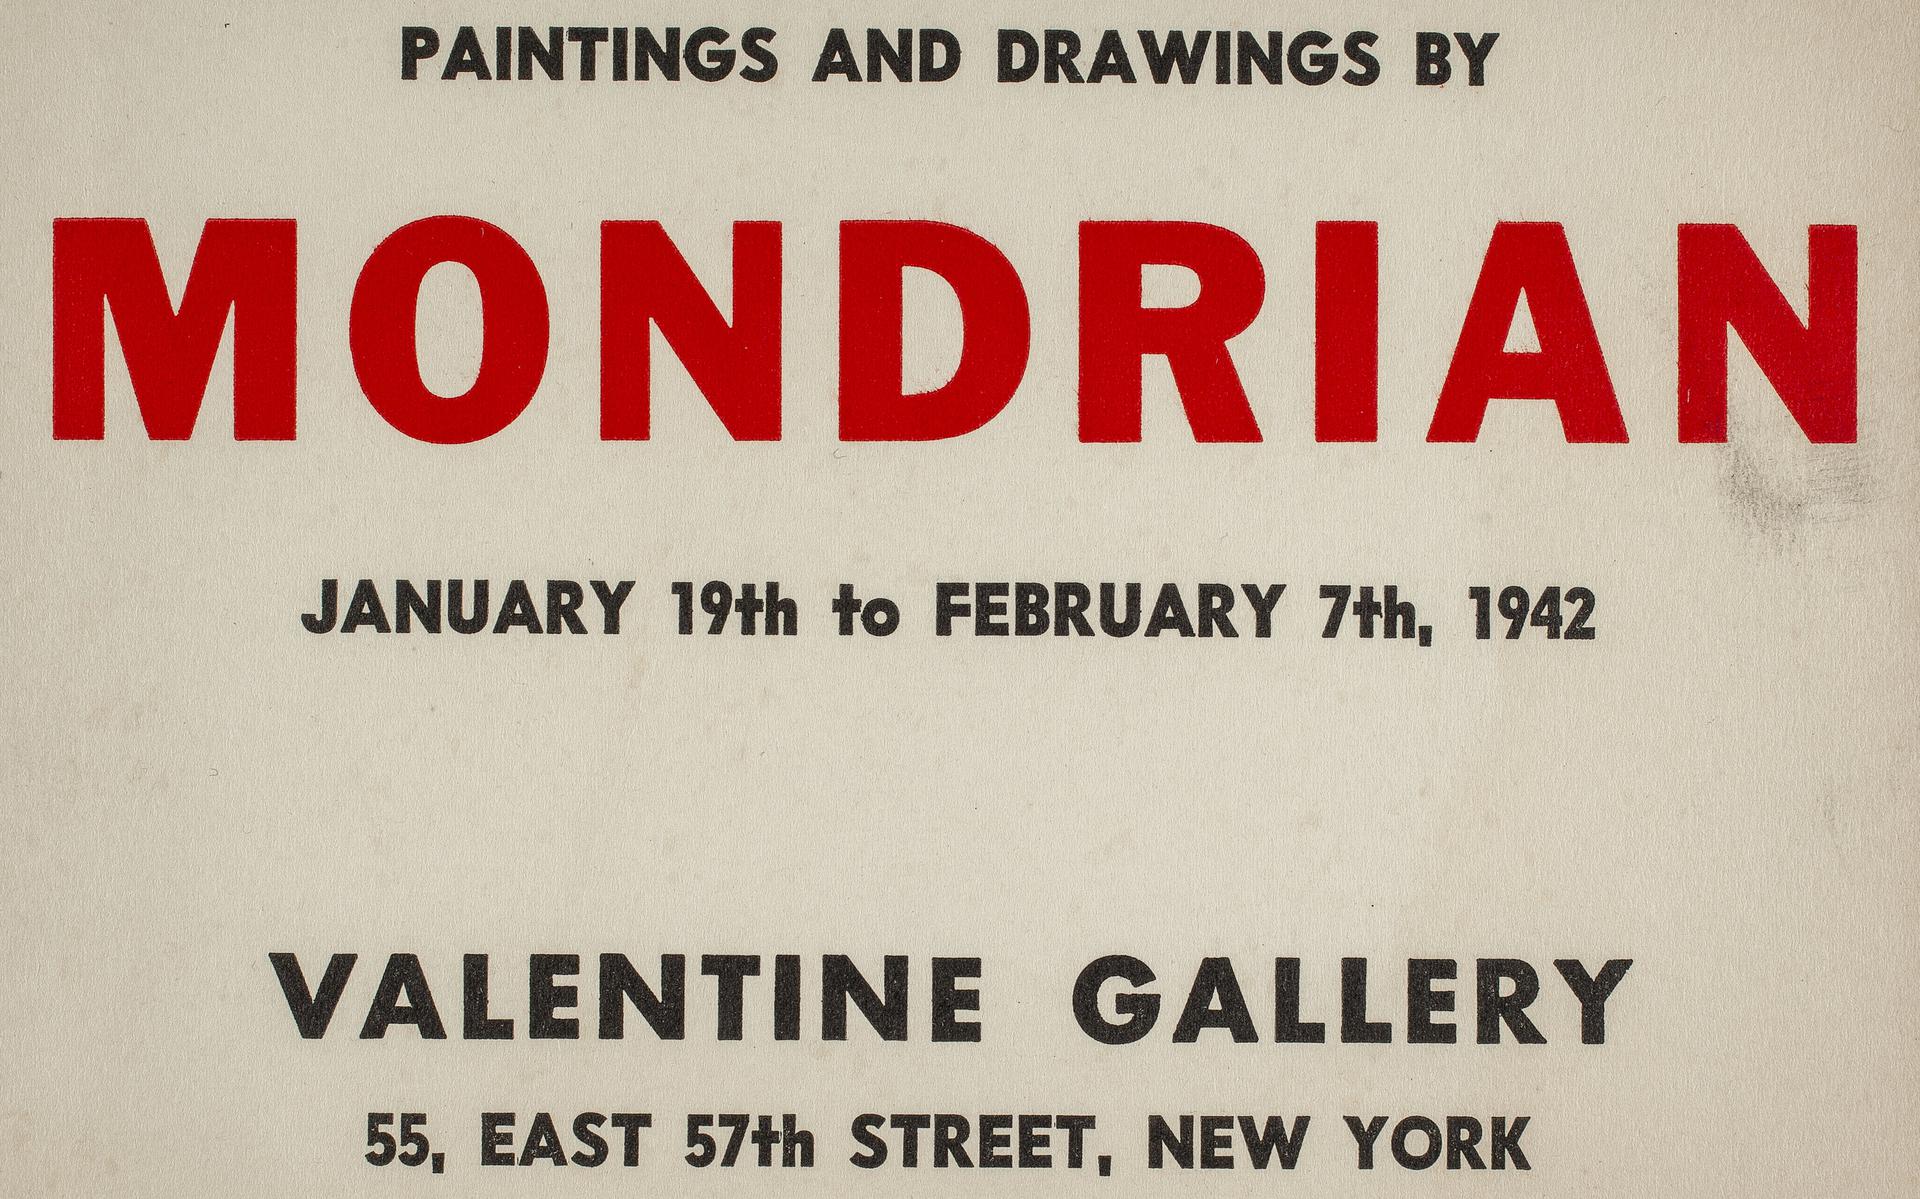 Uitnodigingskaart gericht aan De Schultess-Loew voor Mondriaans enige solotentoonstelling in 1942. 